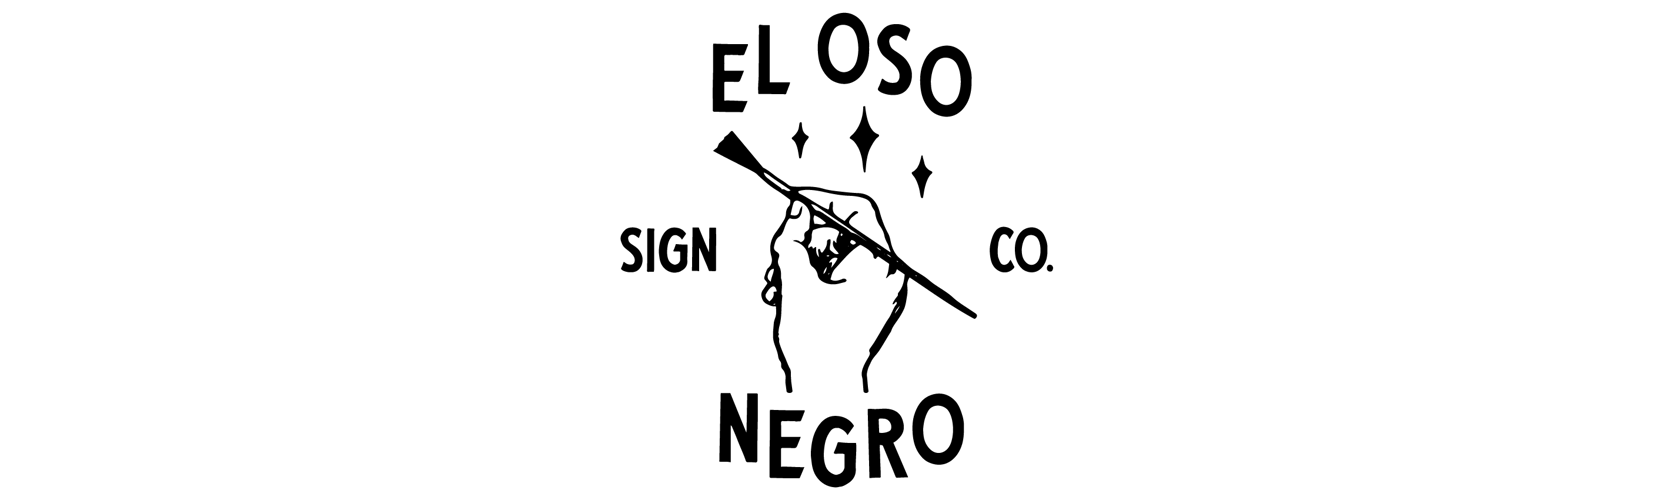 El Oso Negro Sign Co.